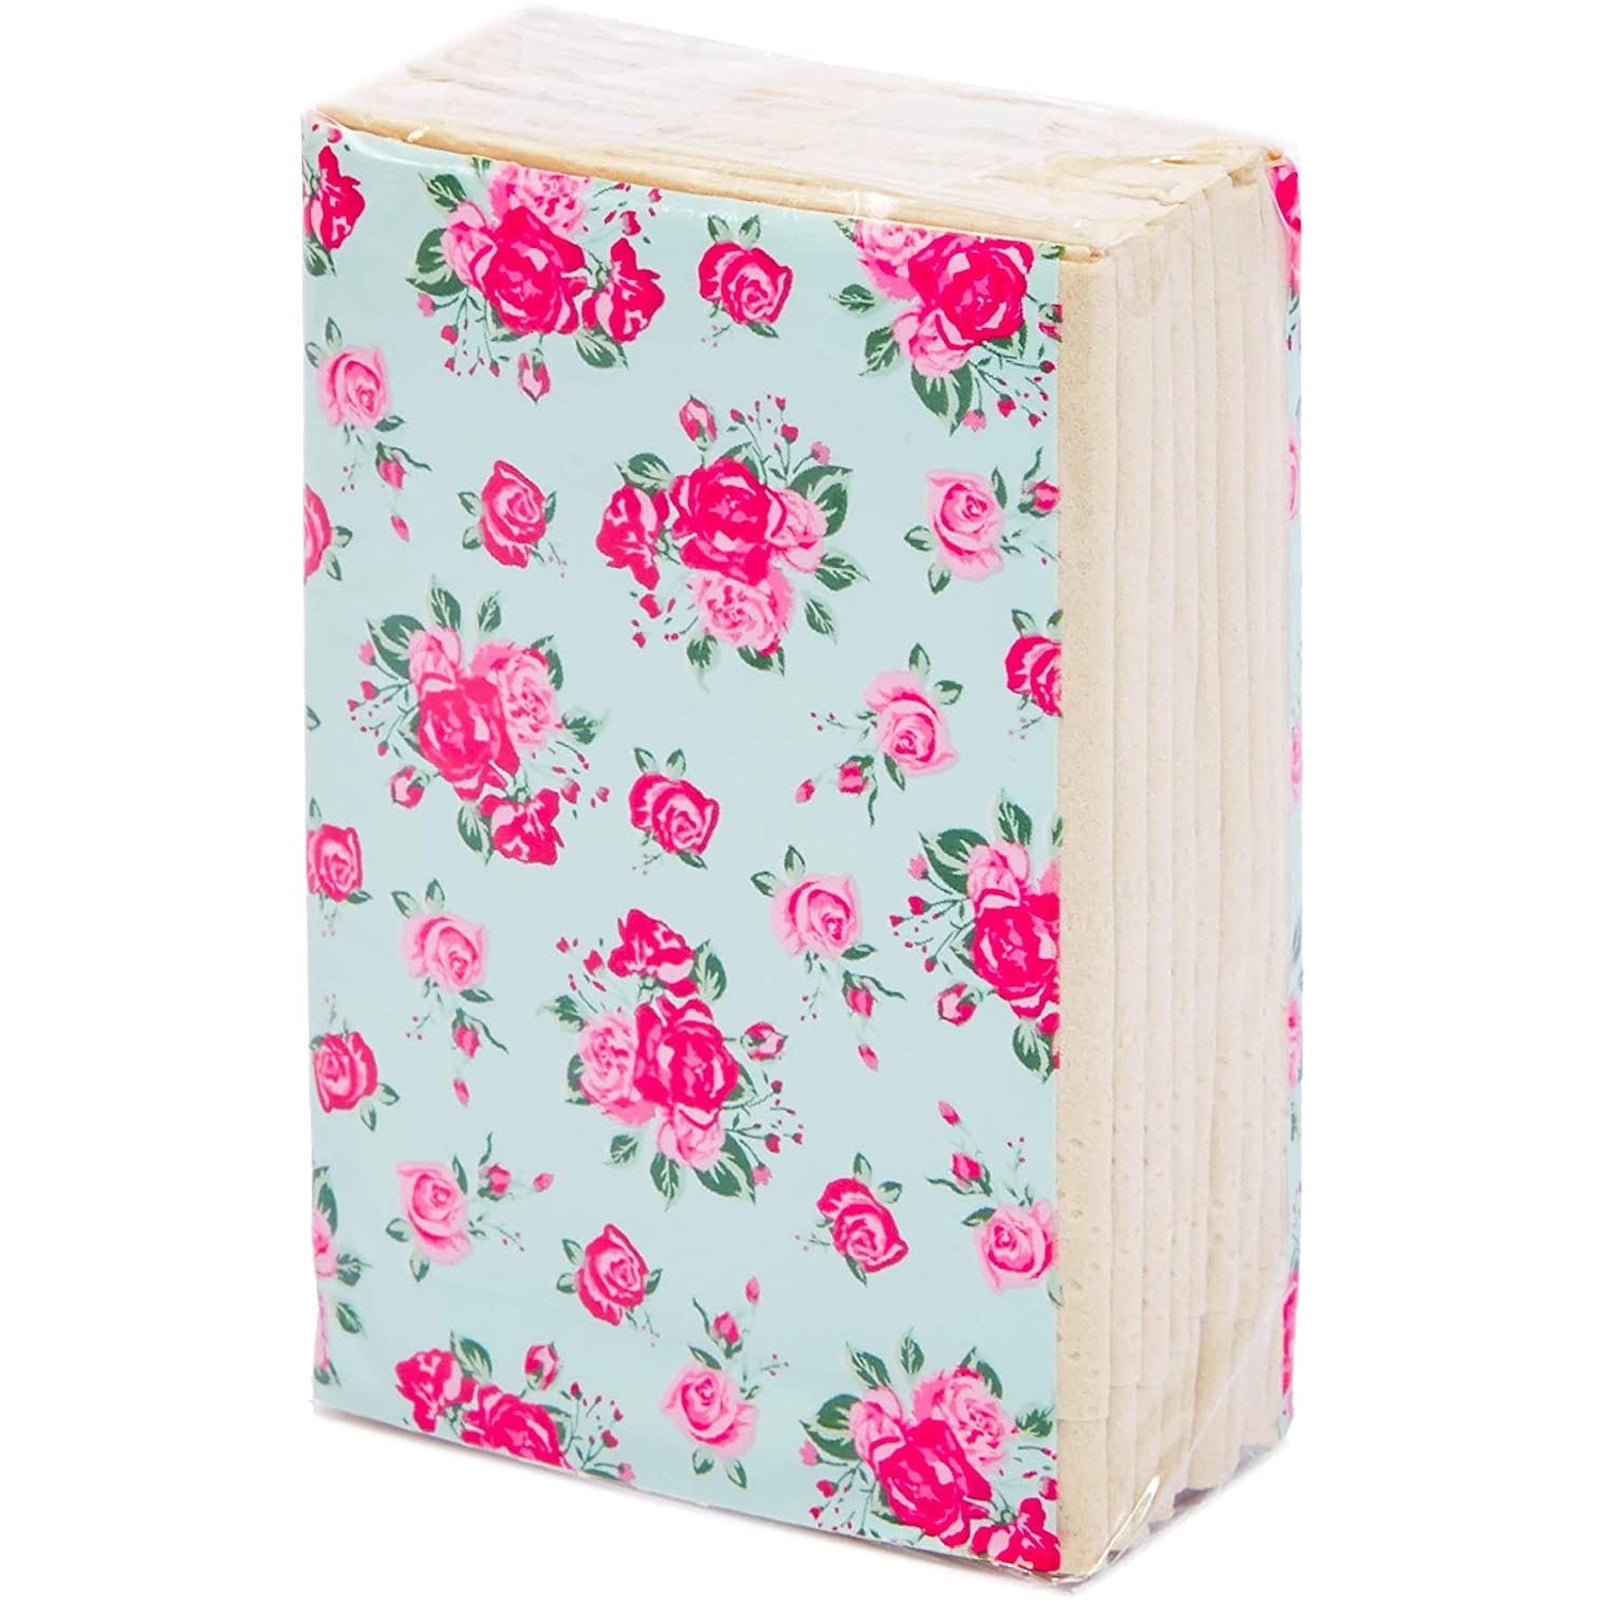 Gift for Bridal Shower 72Pack Vintage Floral Facial Pocket Travel Tissue Packs 